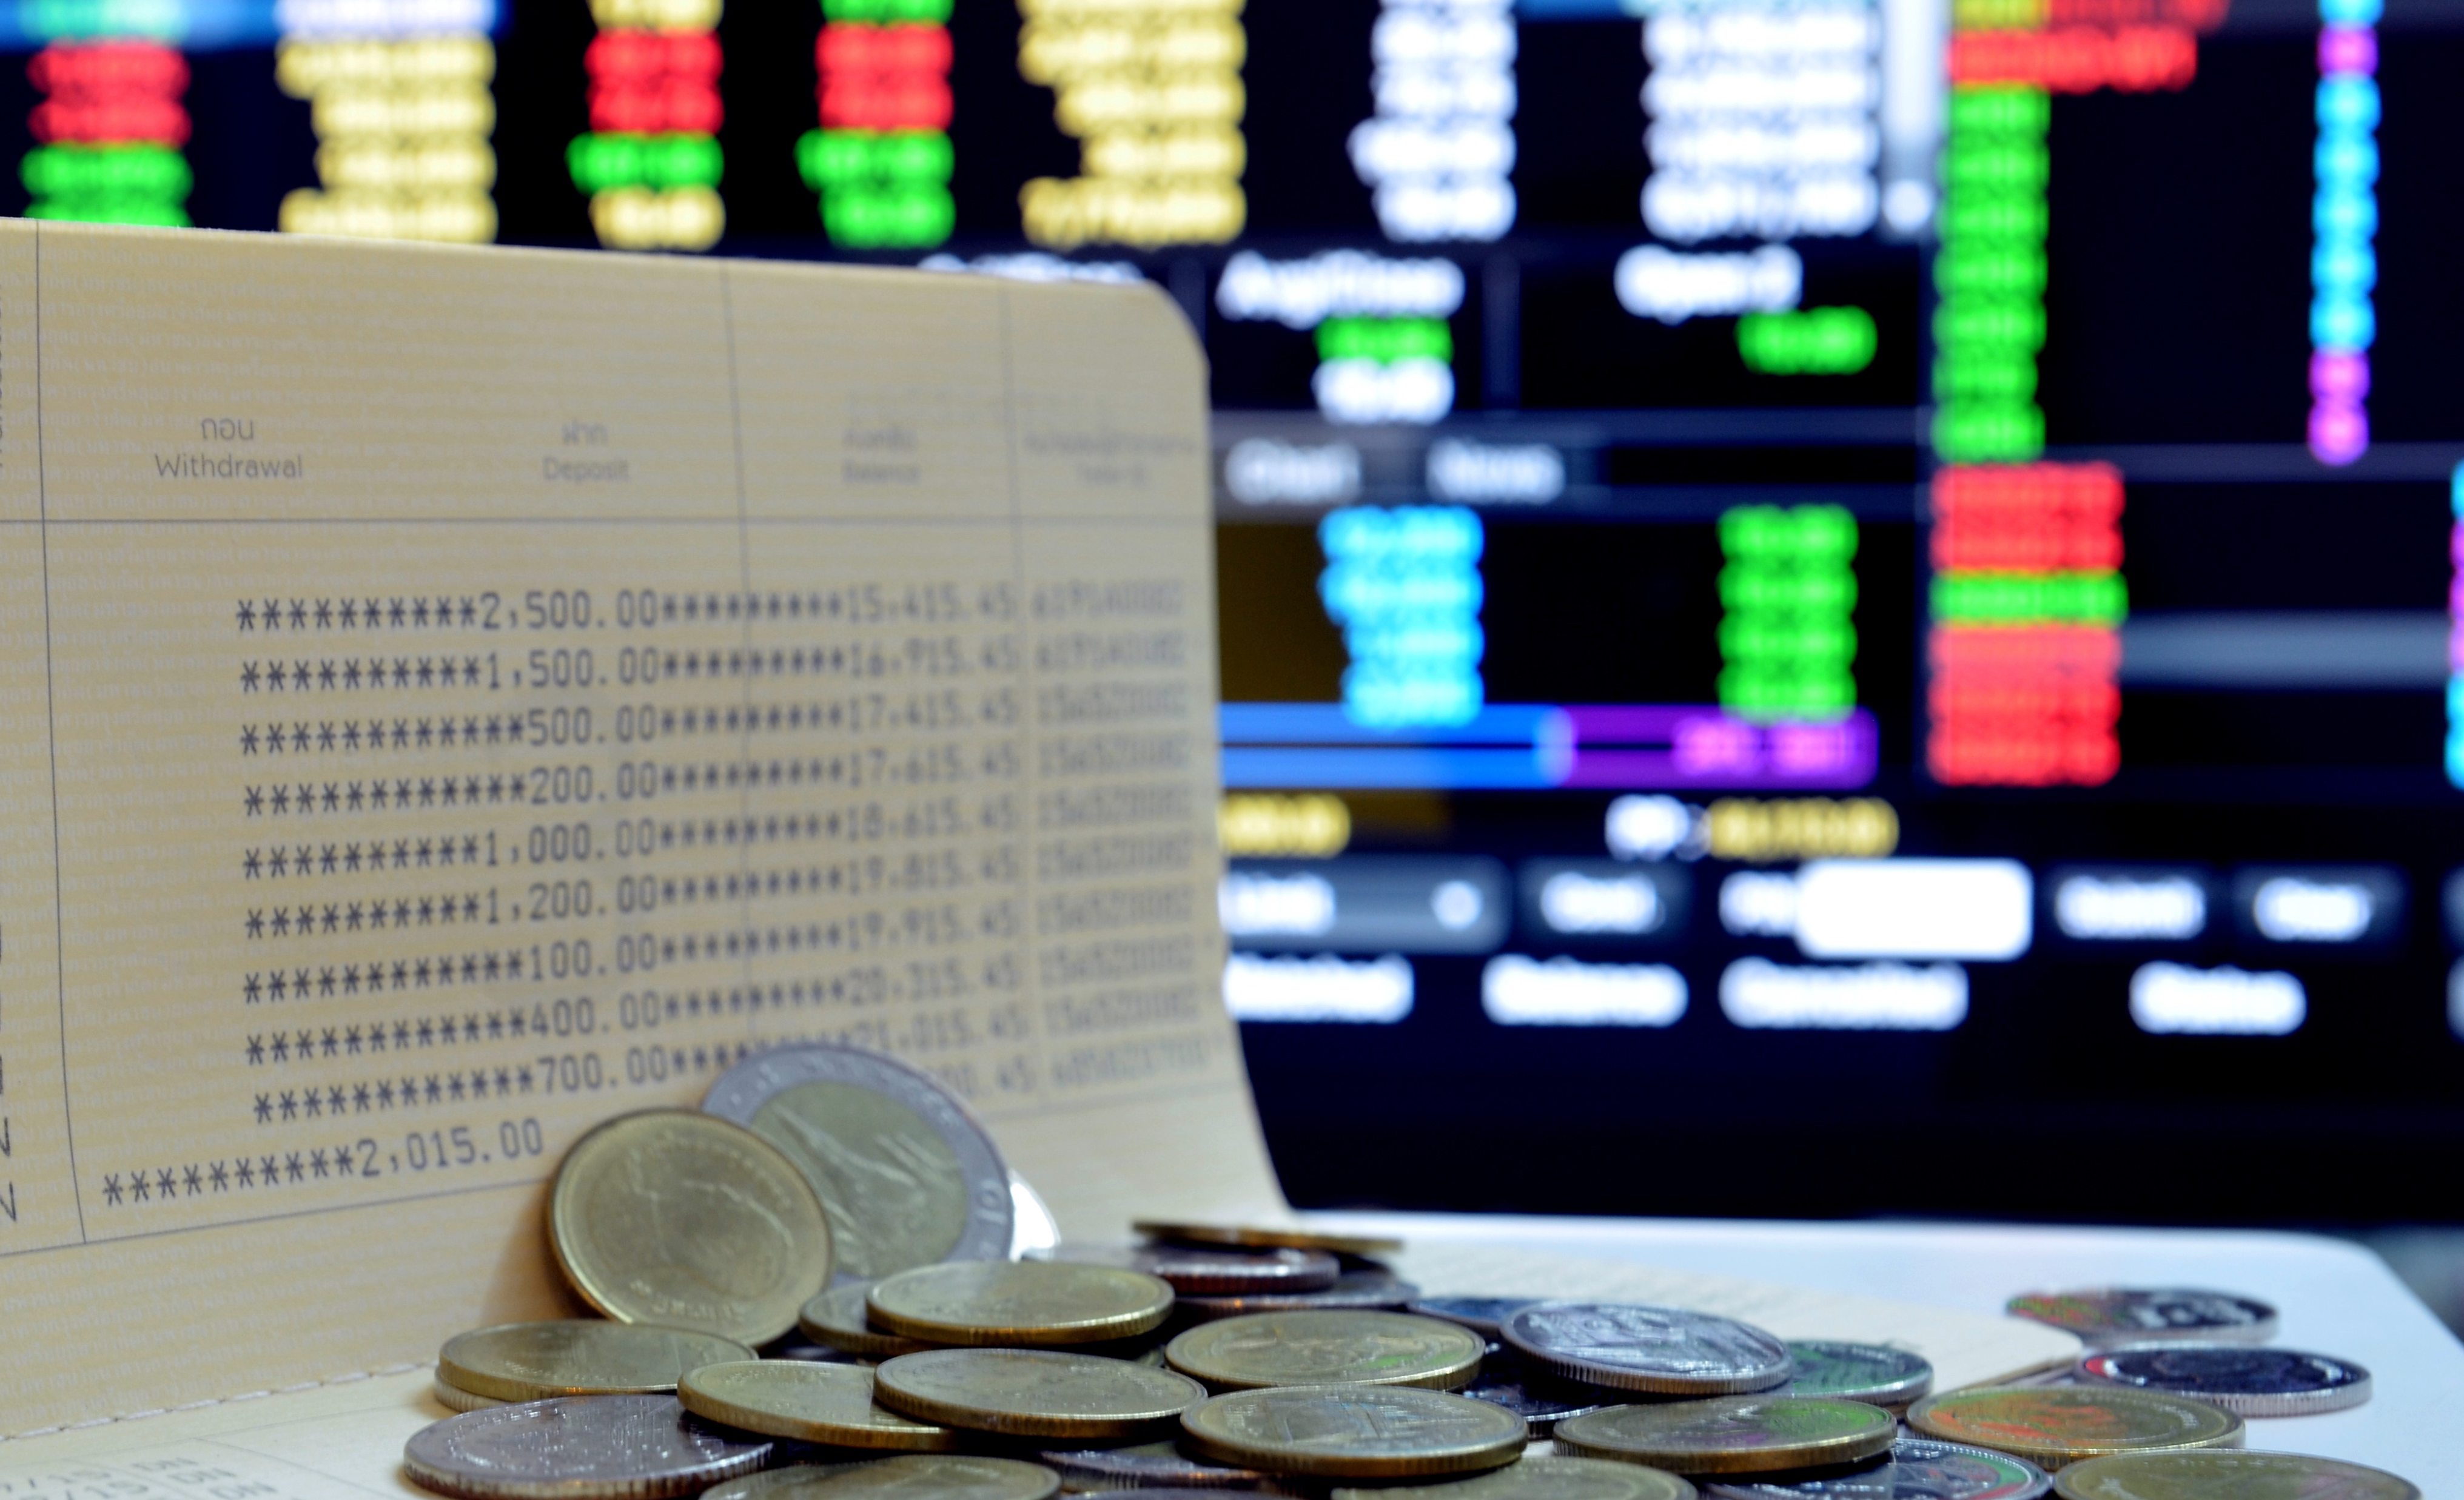 moedas espalhadas sobre um papel onde gastos estão escritos, ao fundo um painel de investimentos, simulando a bolsa de valores